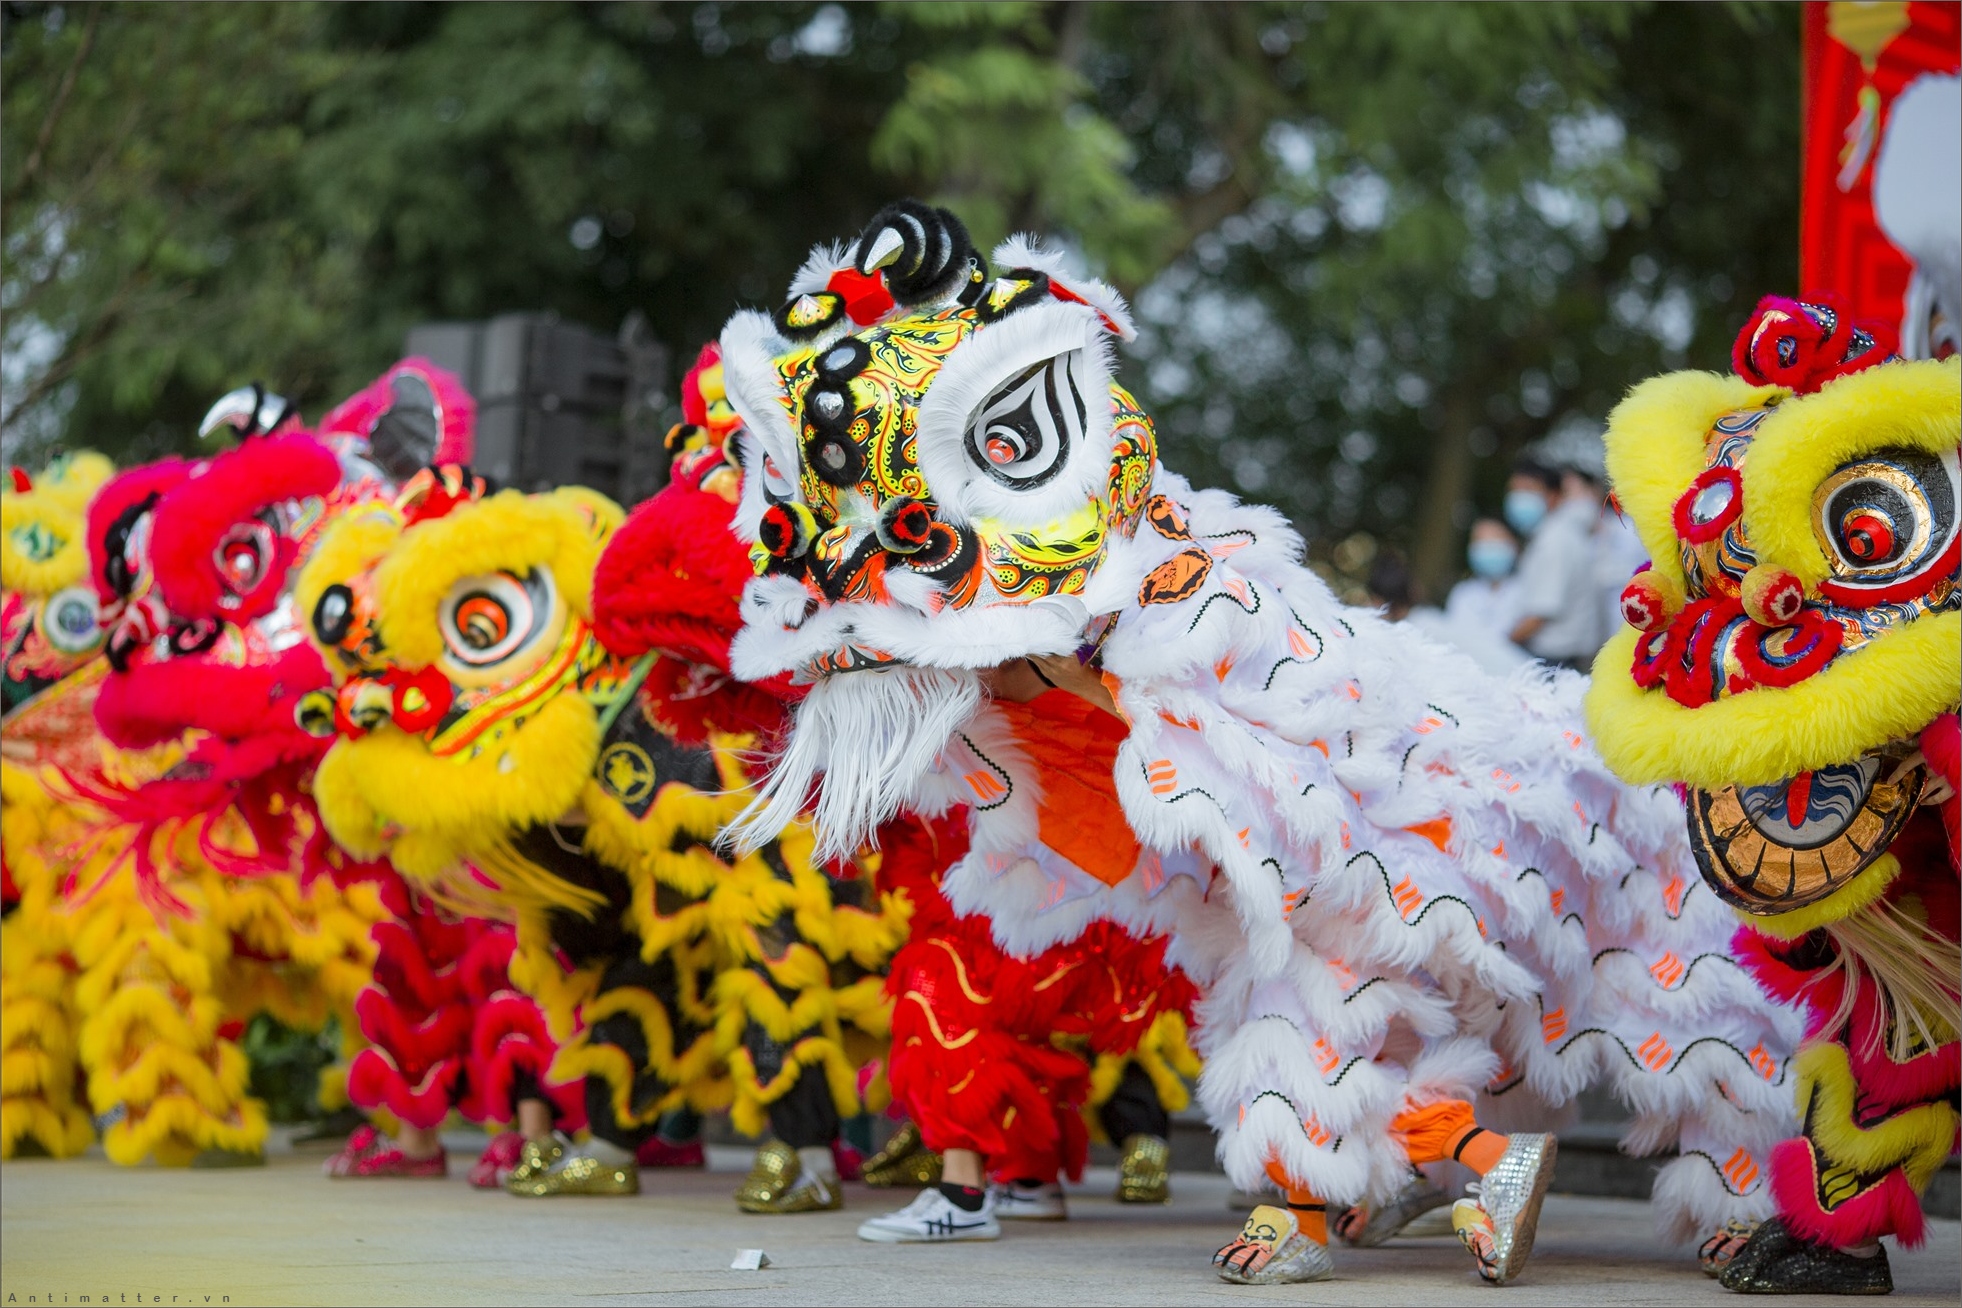 Những màn múa lân sư rồng sẽ khiến bạn chìm đắm trong âm nhạc và màu sắc sôi động. Cùng thưởng thức những vũ điệu phong cách Trung Hoa đầy cảm hứng, hấp dẫn mà được trình diễn bởi các vũ công tài năng và sáng tạo.